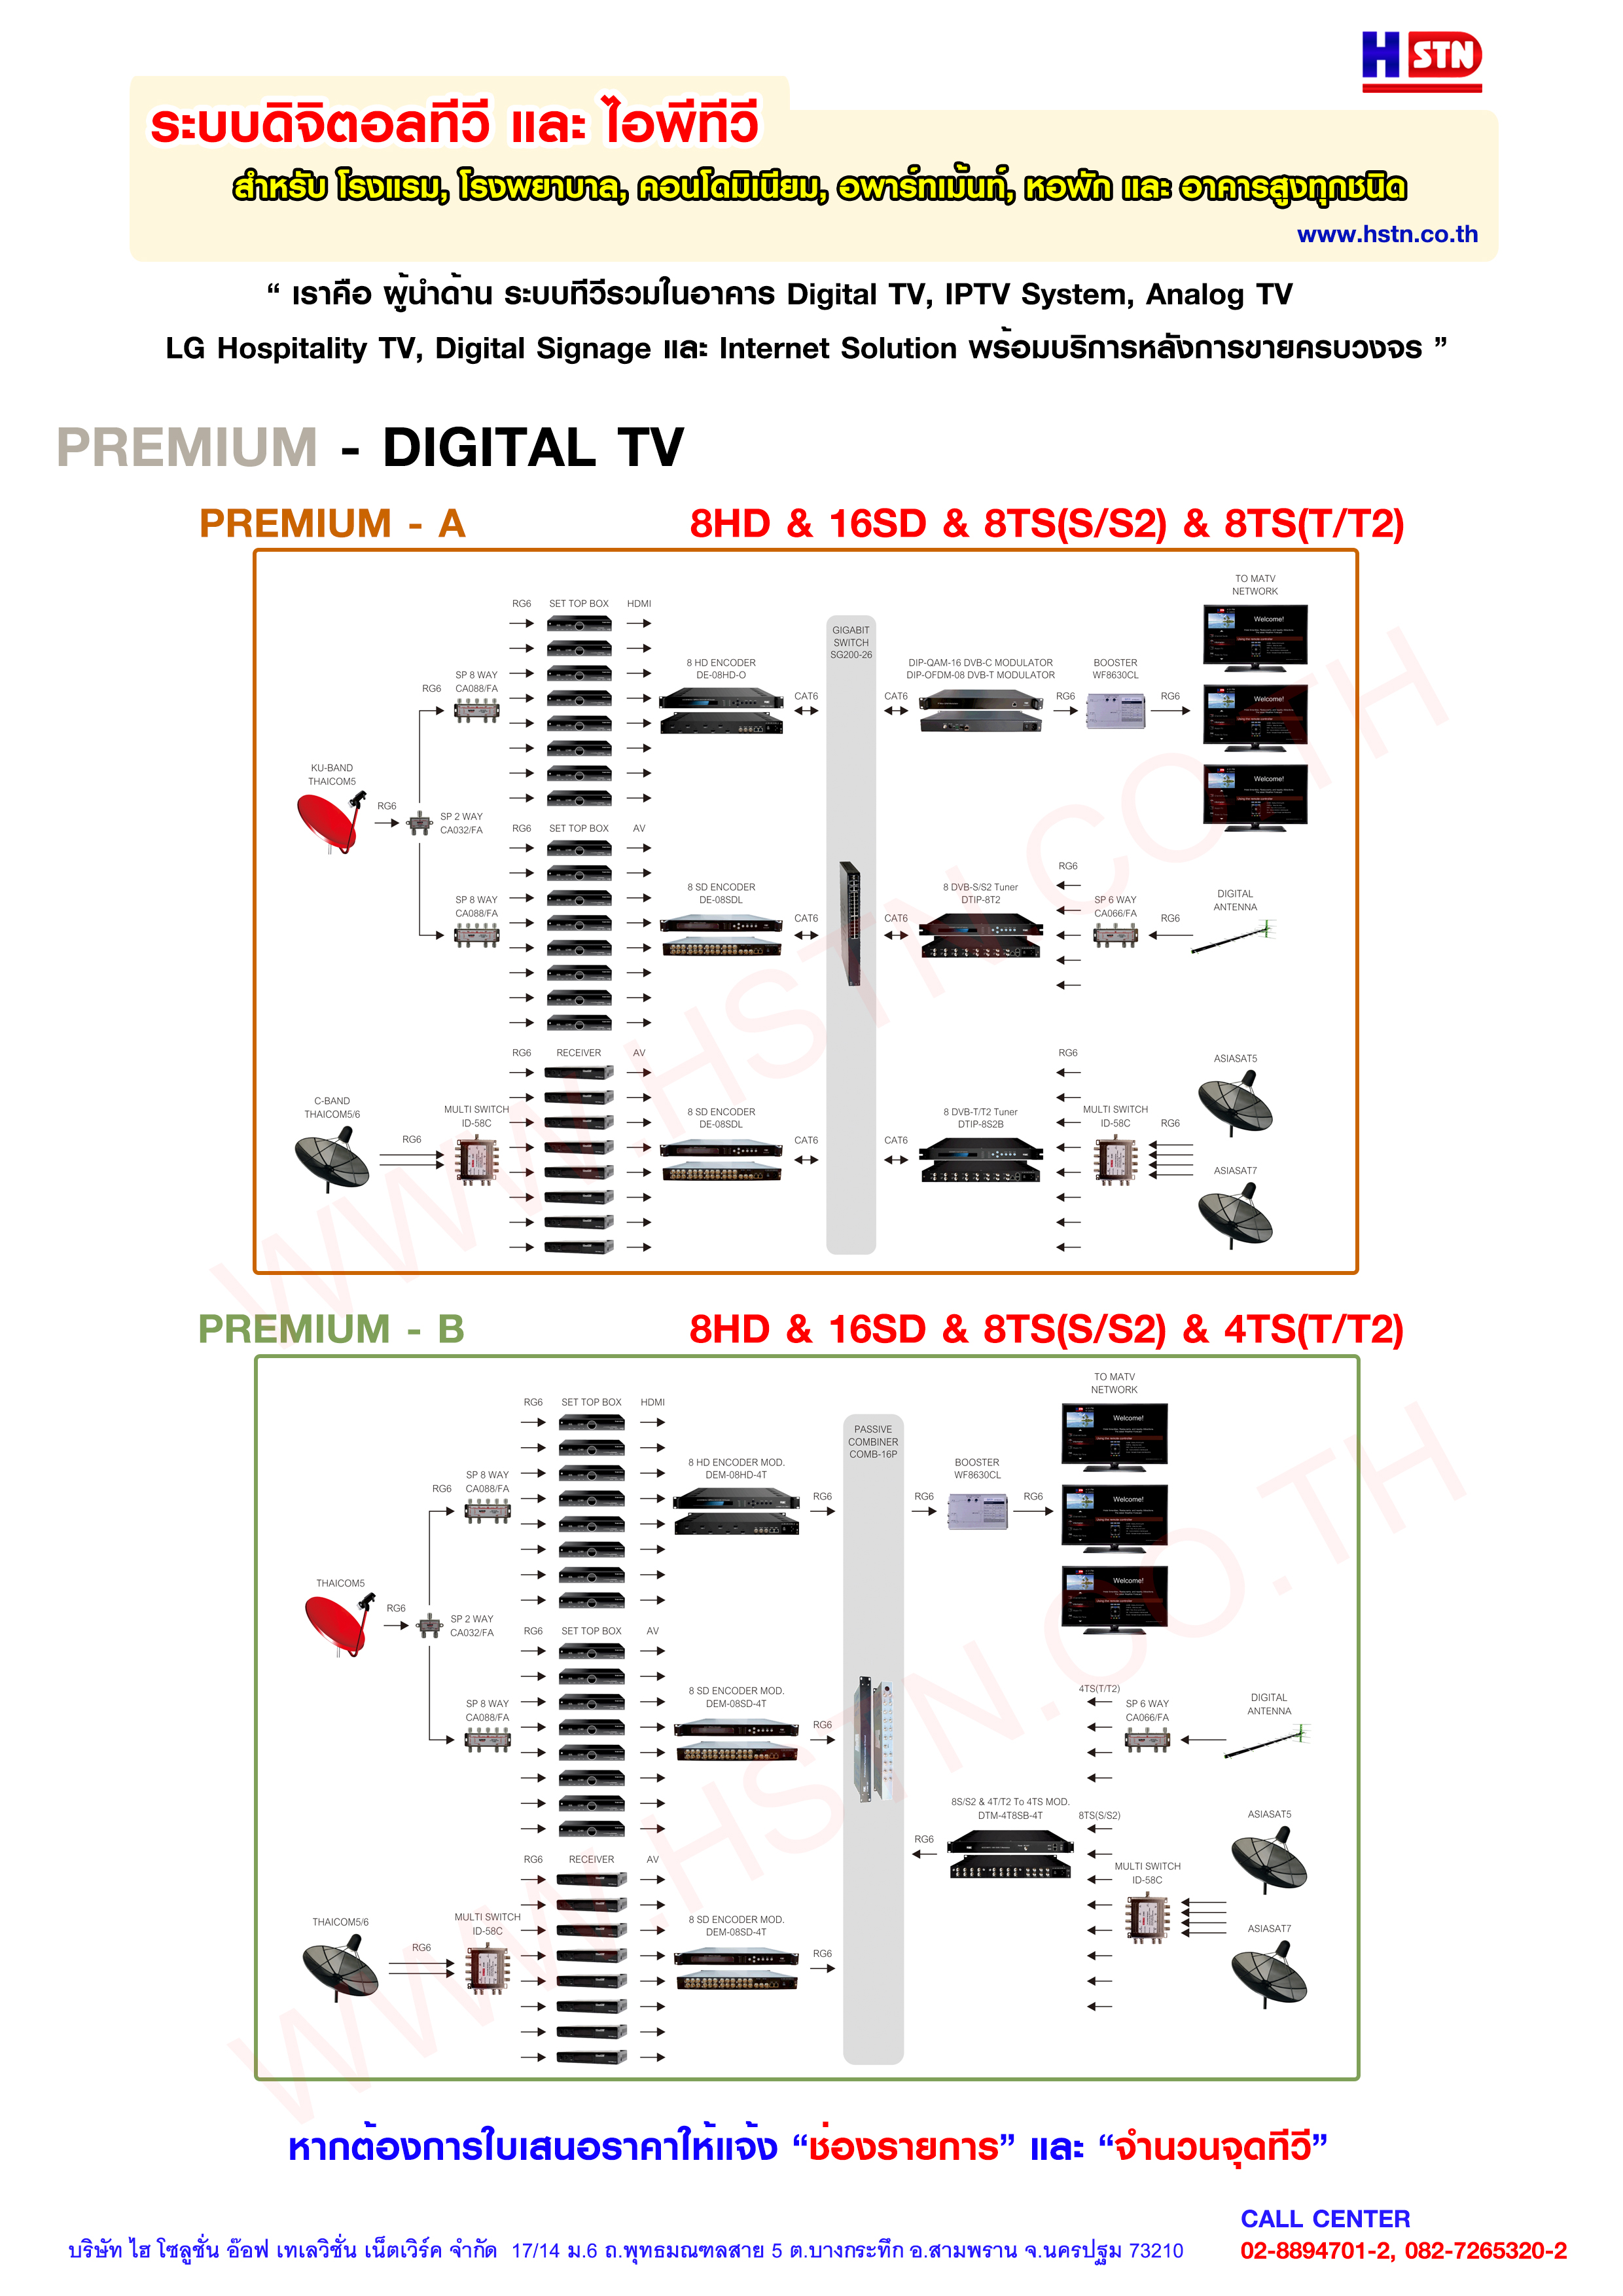 Premium - Digital TV by HSTN